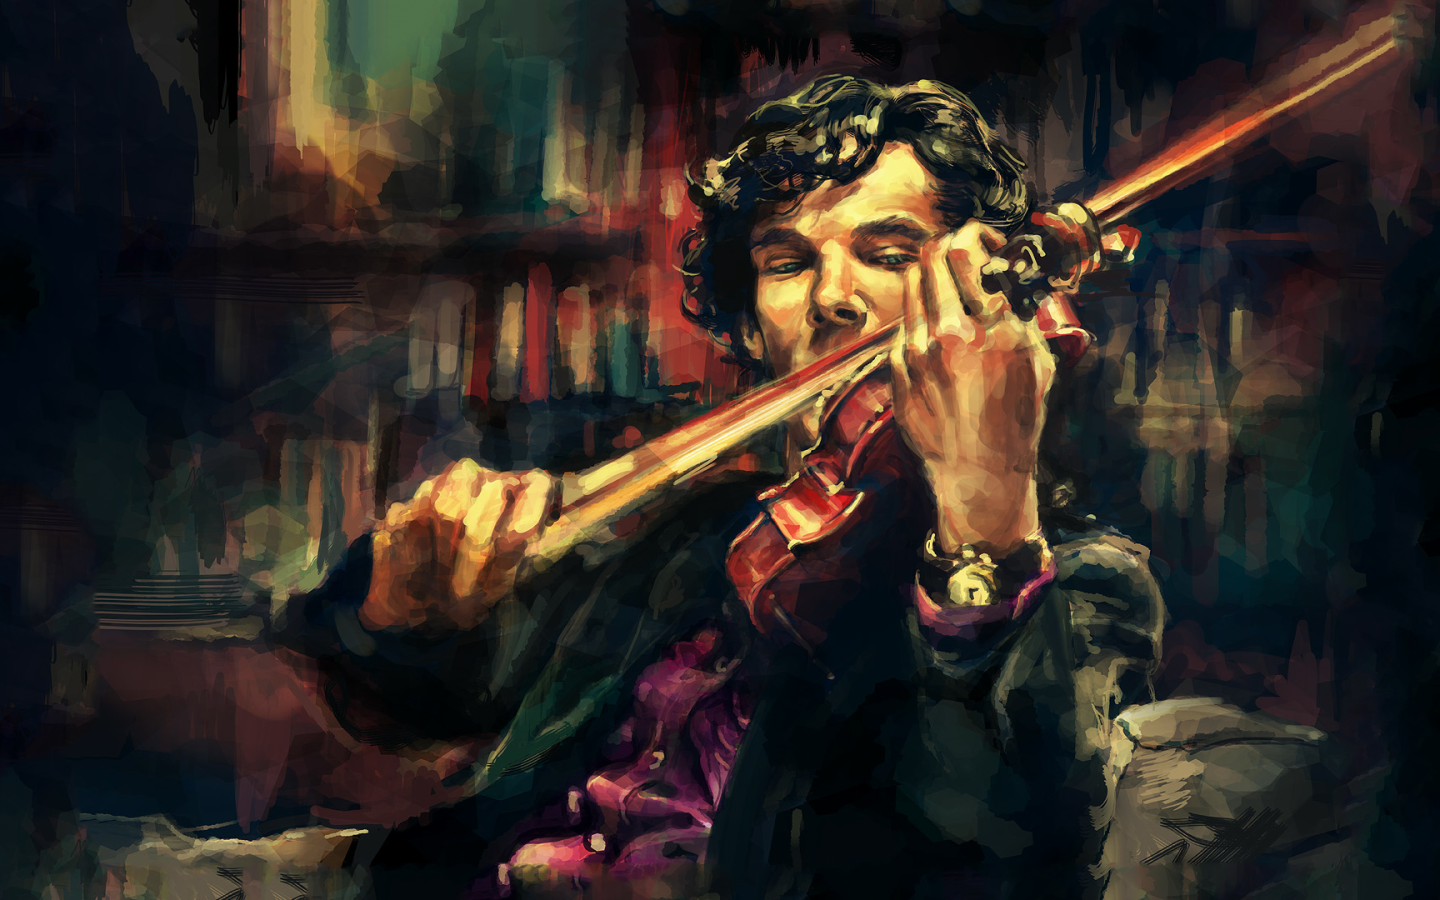 Шерлок играет на скрипке, арт